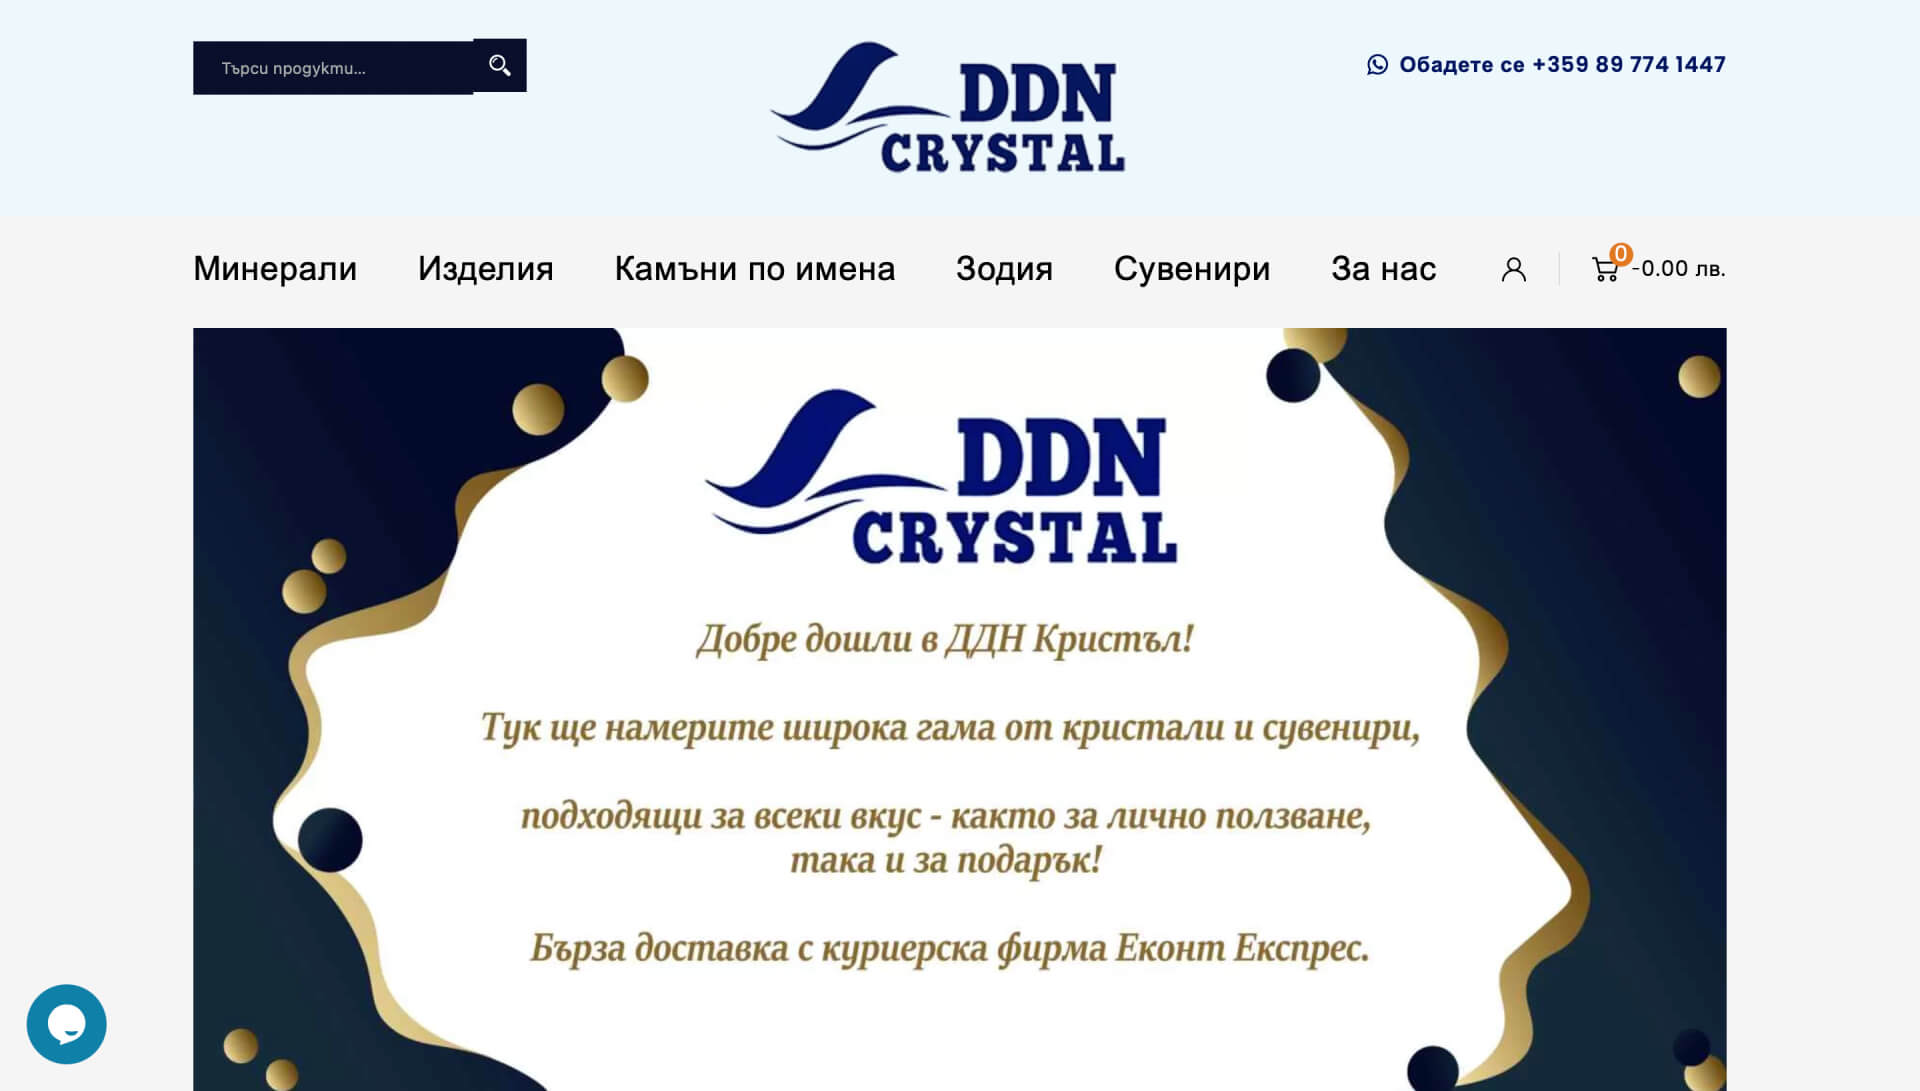 DDN Crystal - Online crystal shop